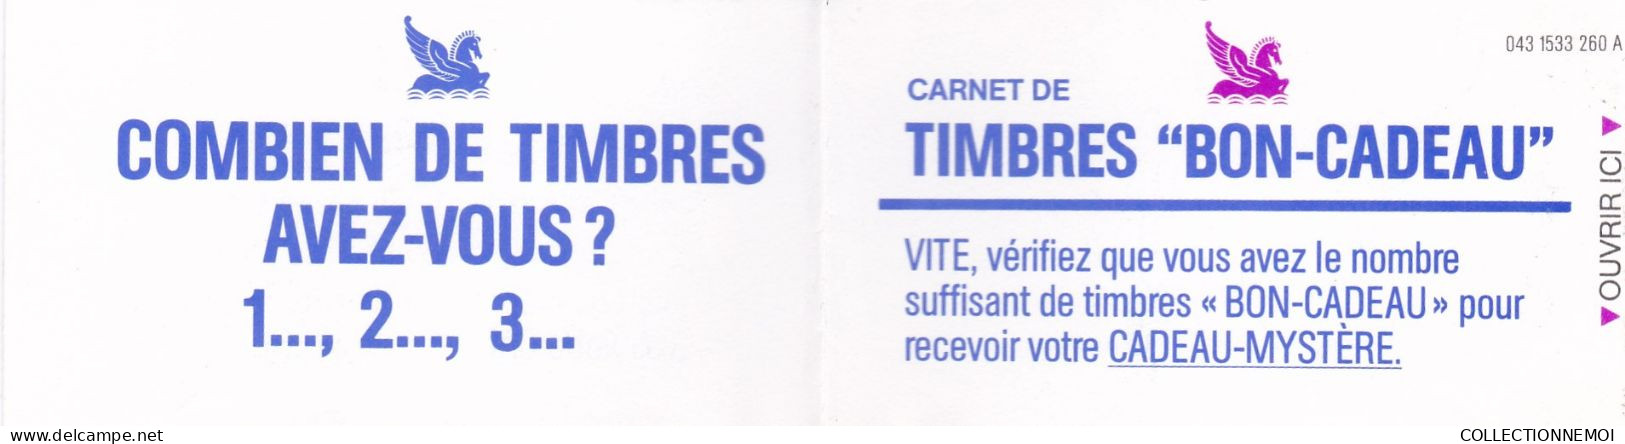 Petit Lot De Timbres De Vignettes - Lots & Kiloware (mixtures) - Max. 999 Stamps